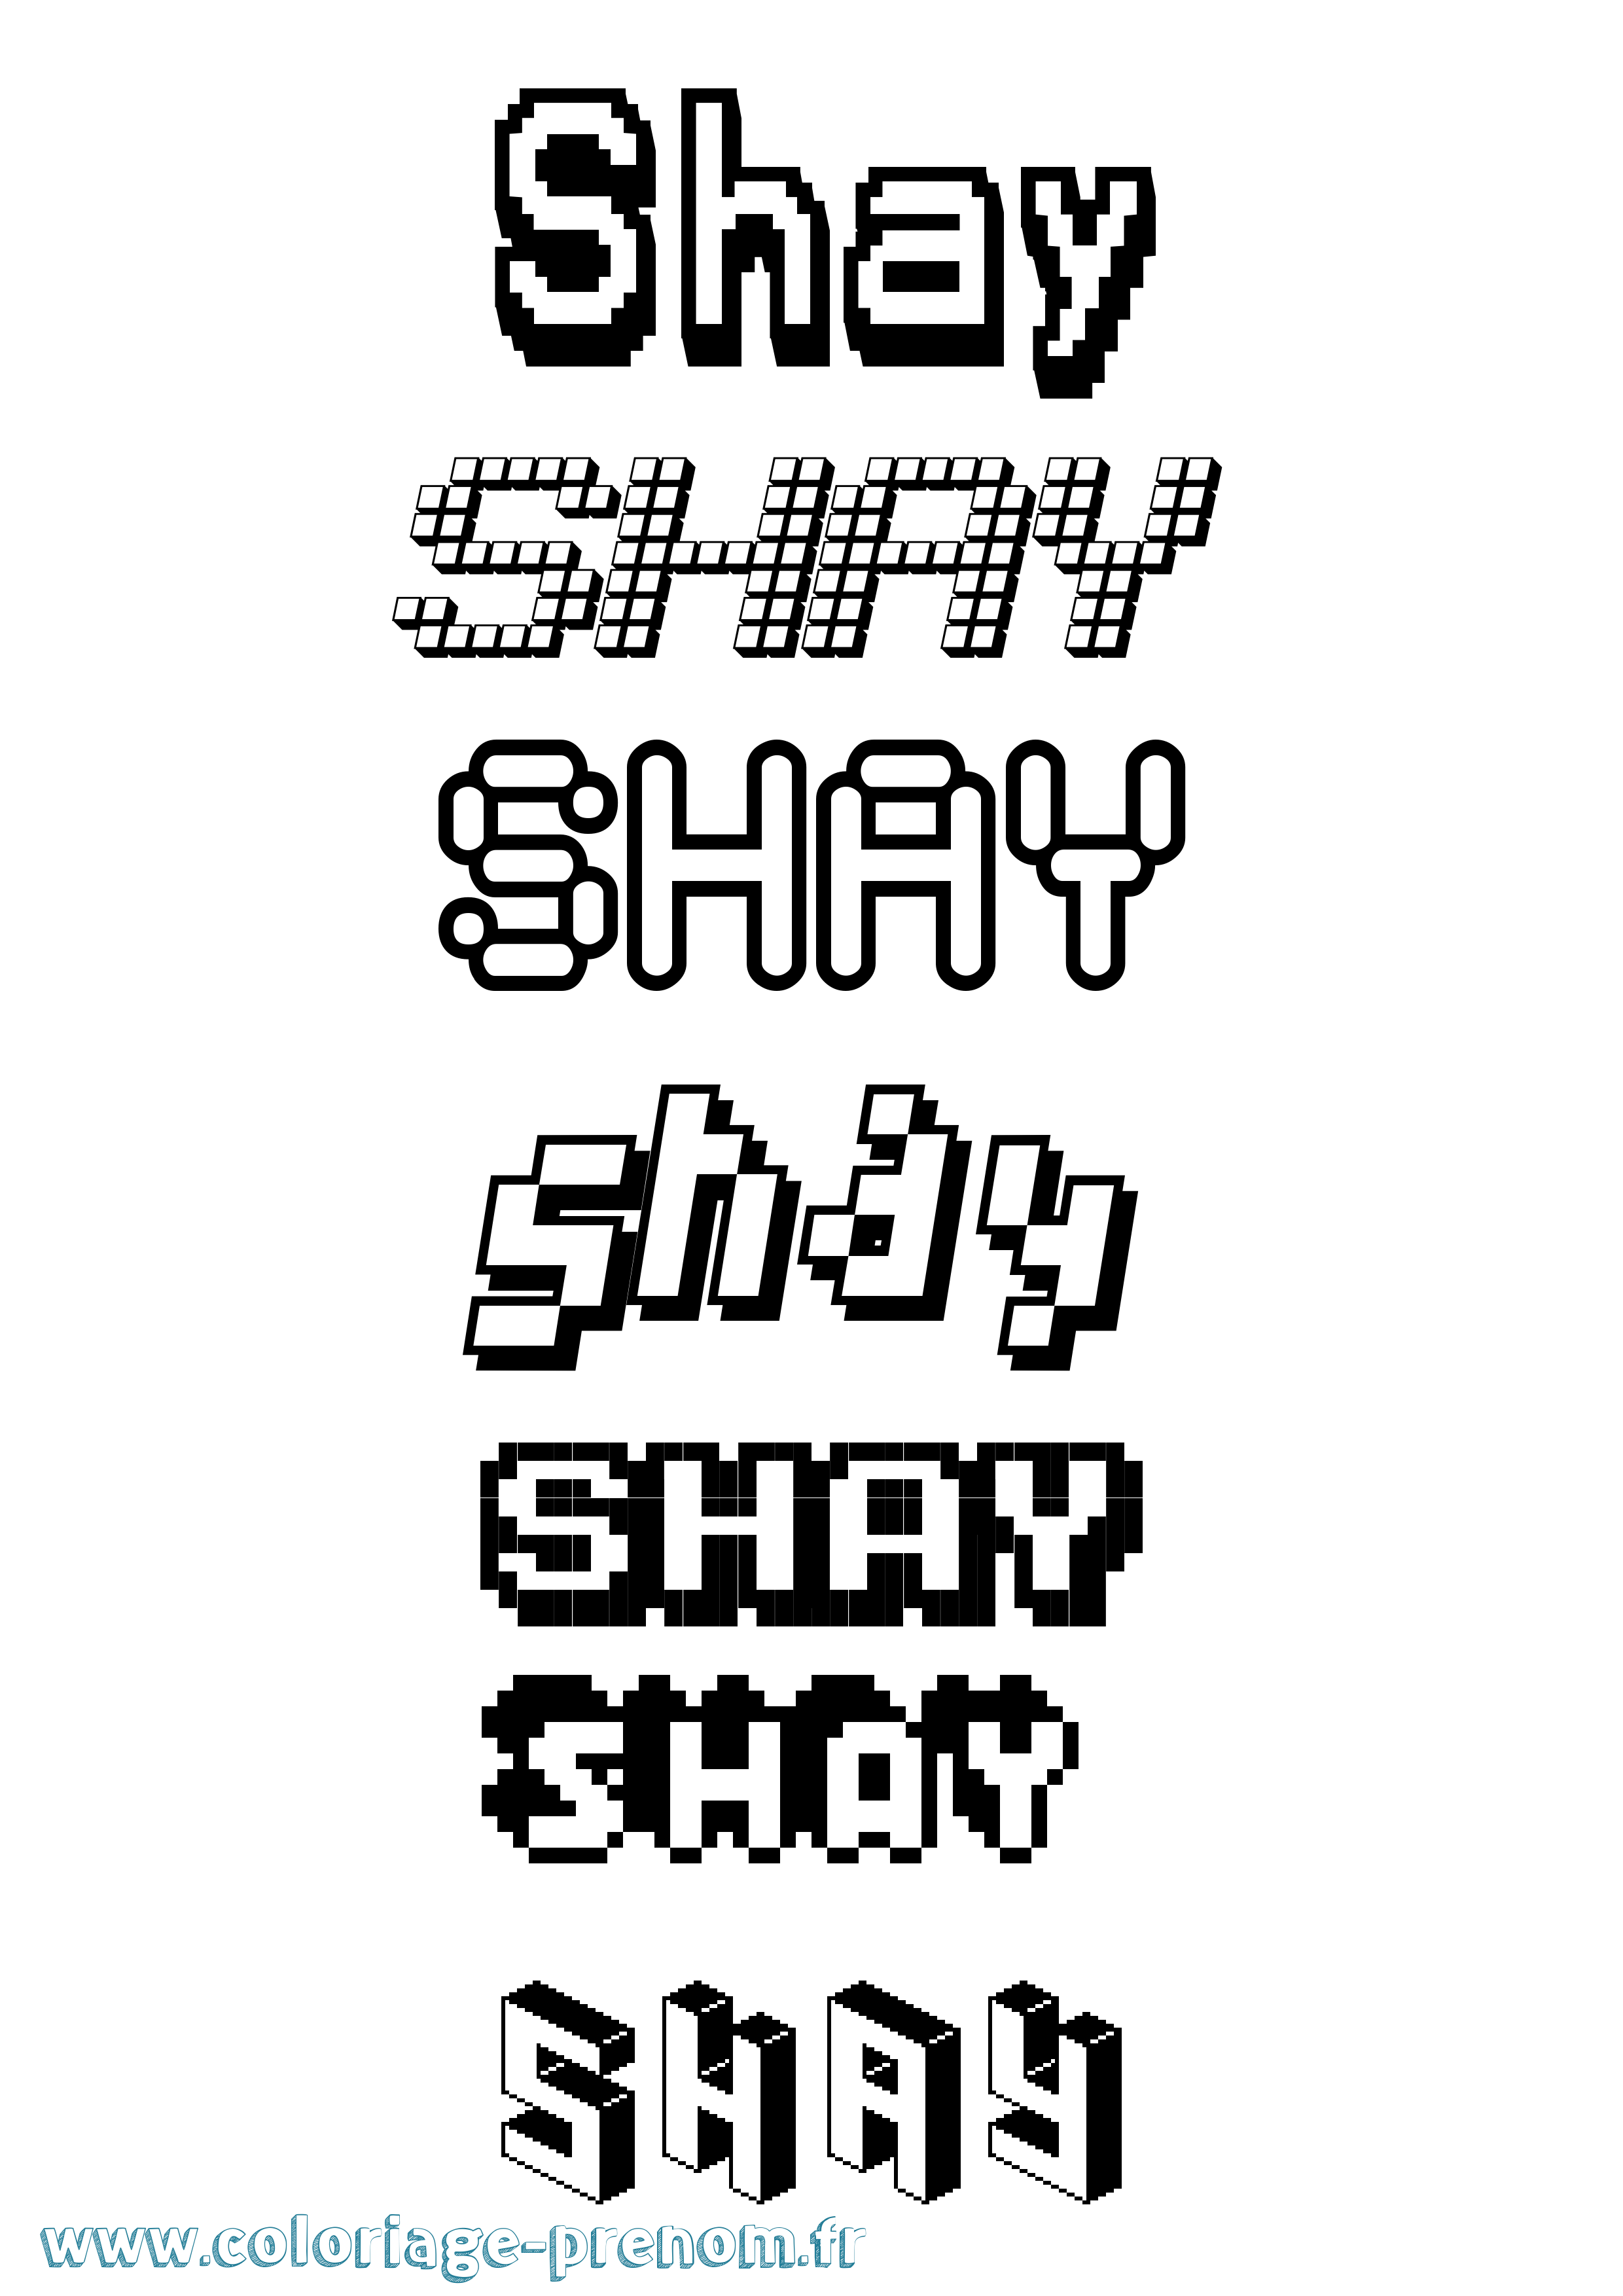 Coloriage prénom Shay Pixel